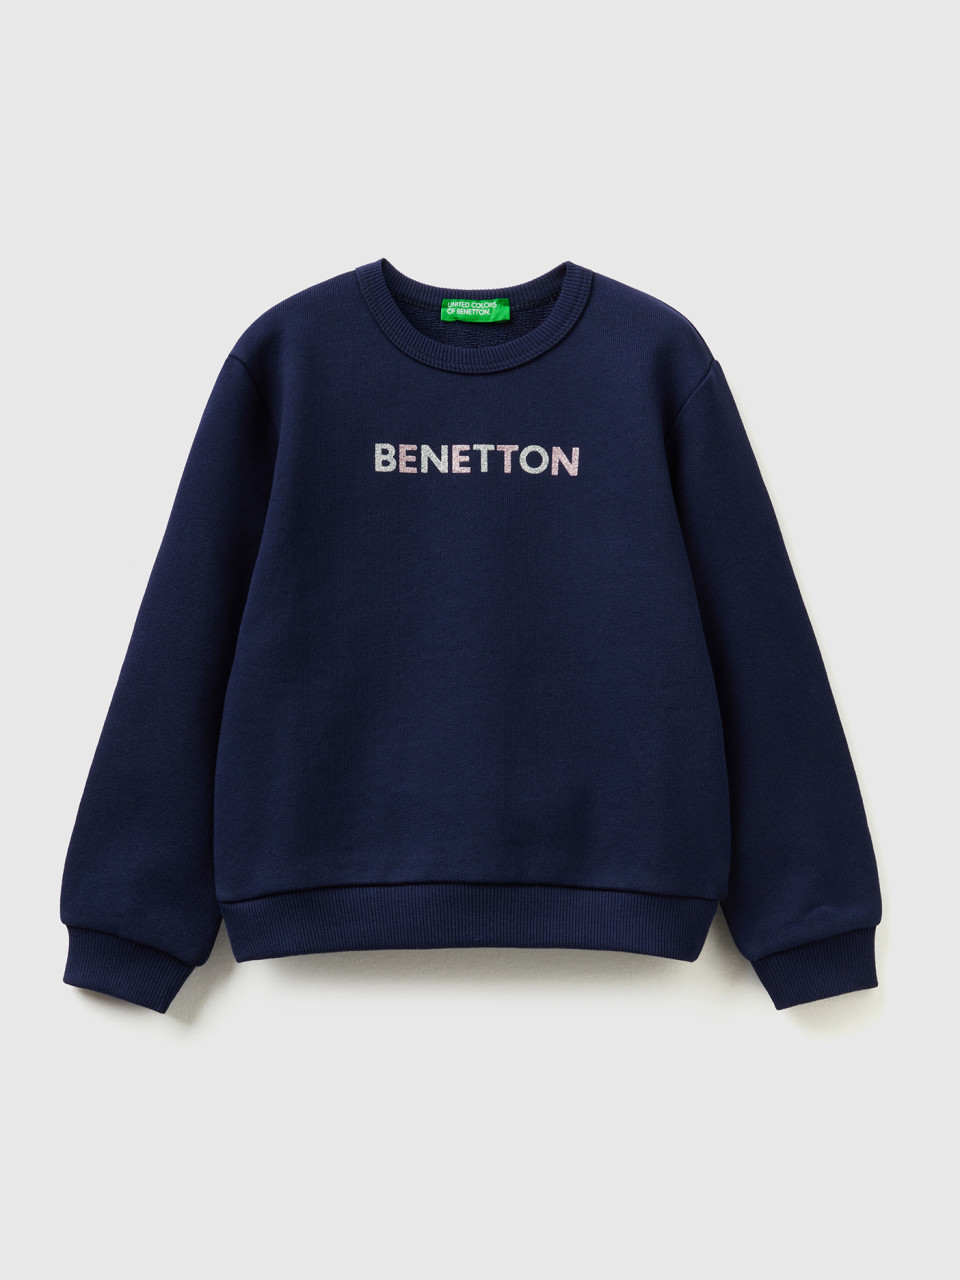 Benetton, Dark Blue Sweatshirt In Organic Cotton With Glittery Print, Dark Blue, Kids